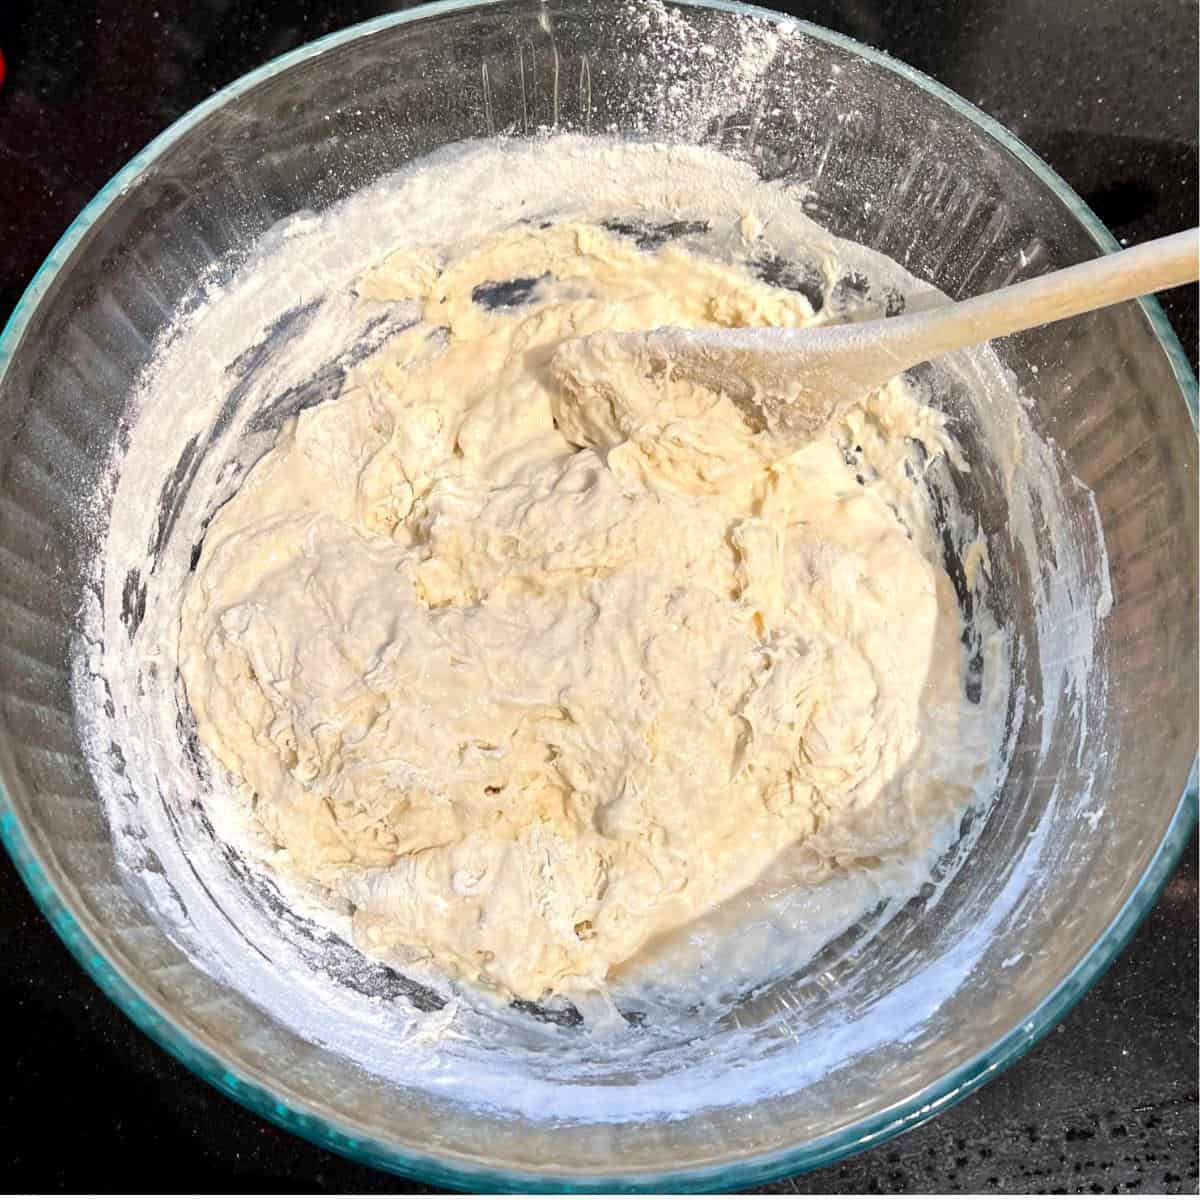 Flour mixed into biga starter for Italian dough.